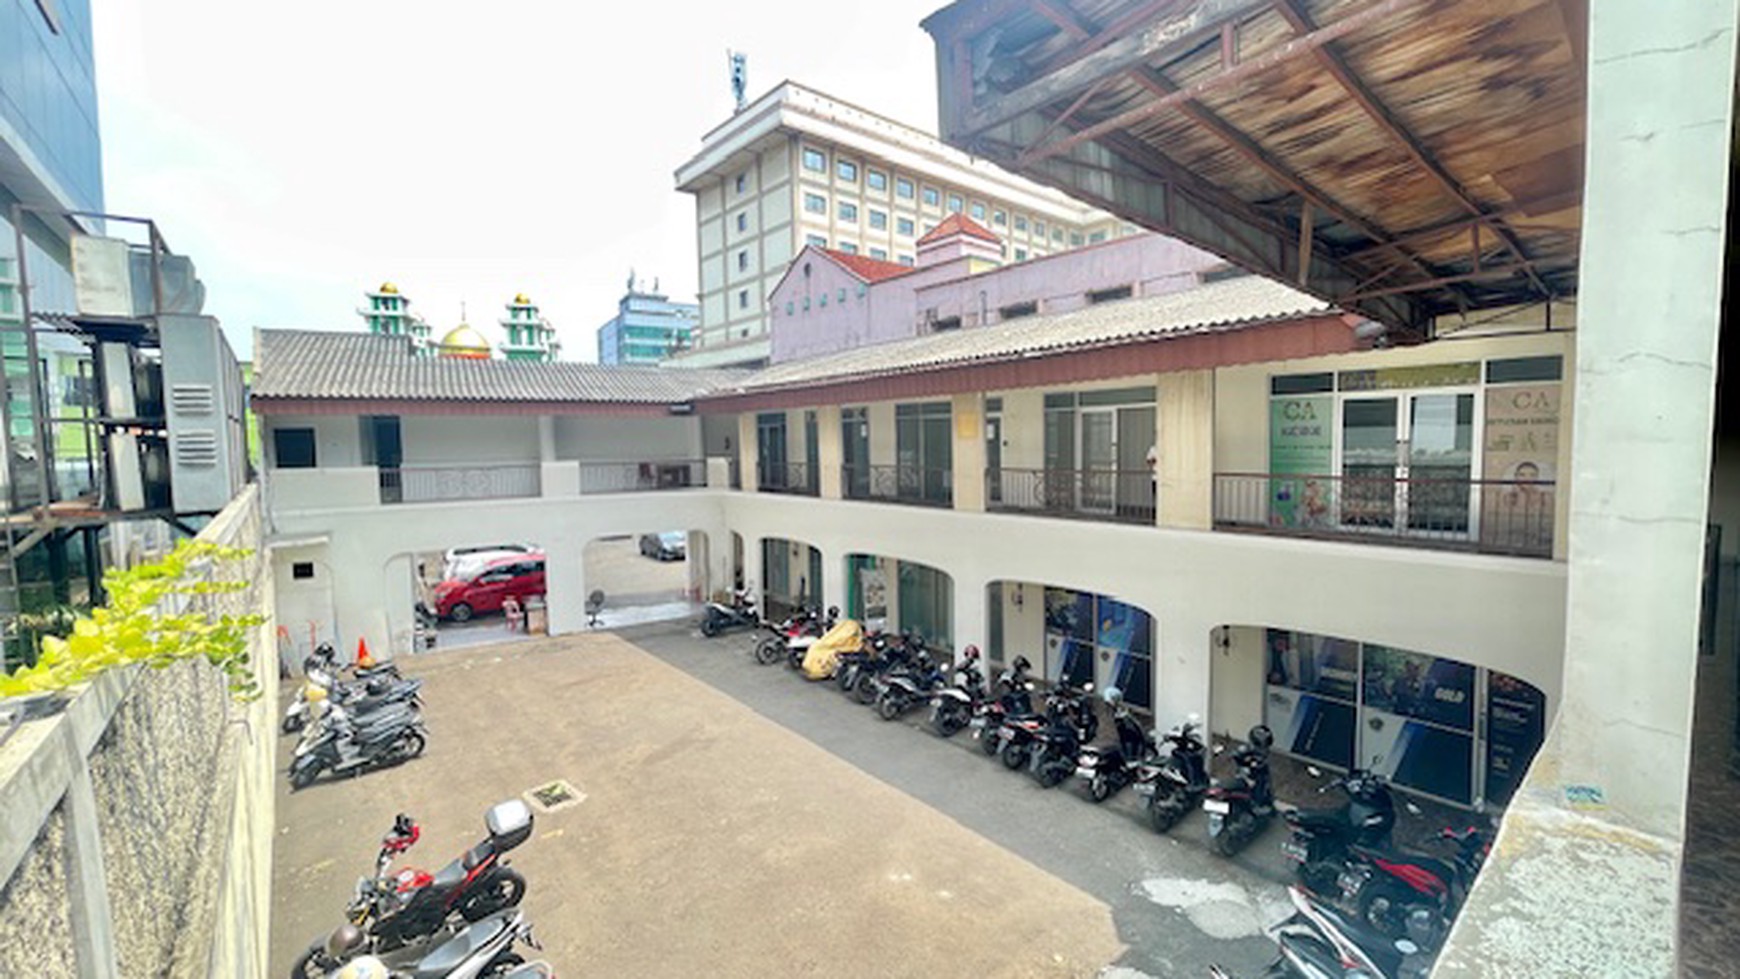 Kantor luas tanah 1450 meter, Mampang Prapatan / Tandean, parkir super luas, siap pakai